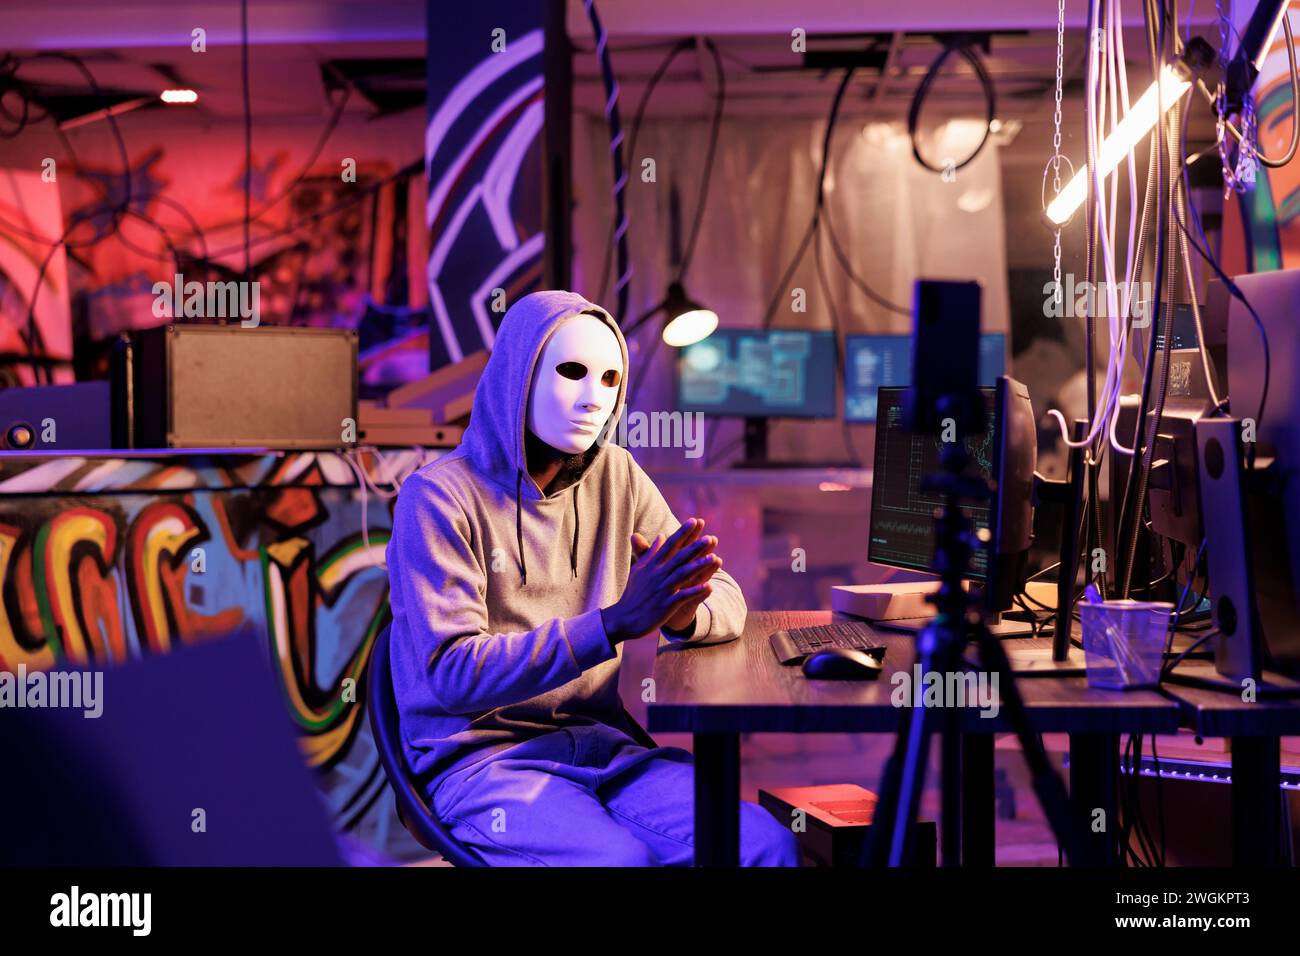 Kriminelle in anonymer Maske, die Online-Betrugsvideo auf Smartphone aufnimmt. Hacker mit versteckter Identität Live-Streaming-Bedrohung auf dem Mobiltelefon und fordern das Opfer nach Informationen im dunklen Web Stockfoto